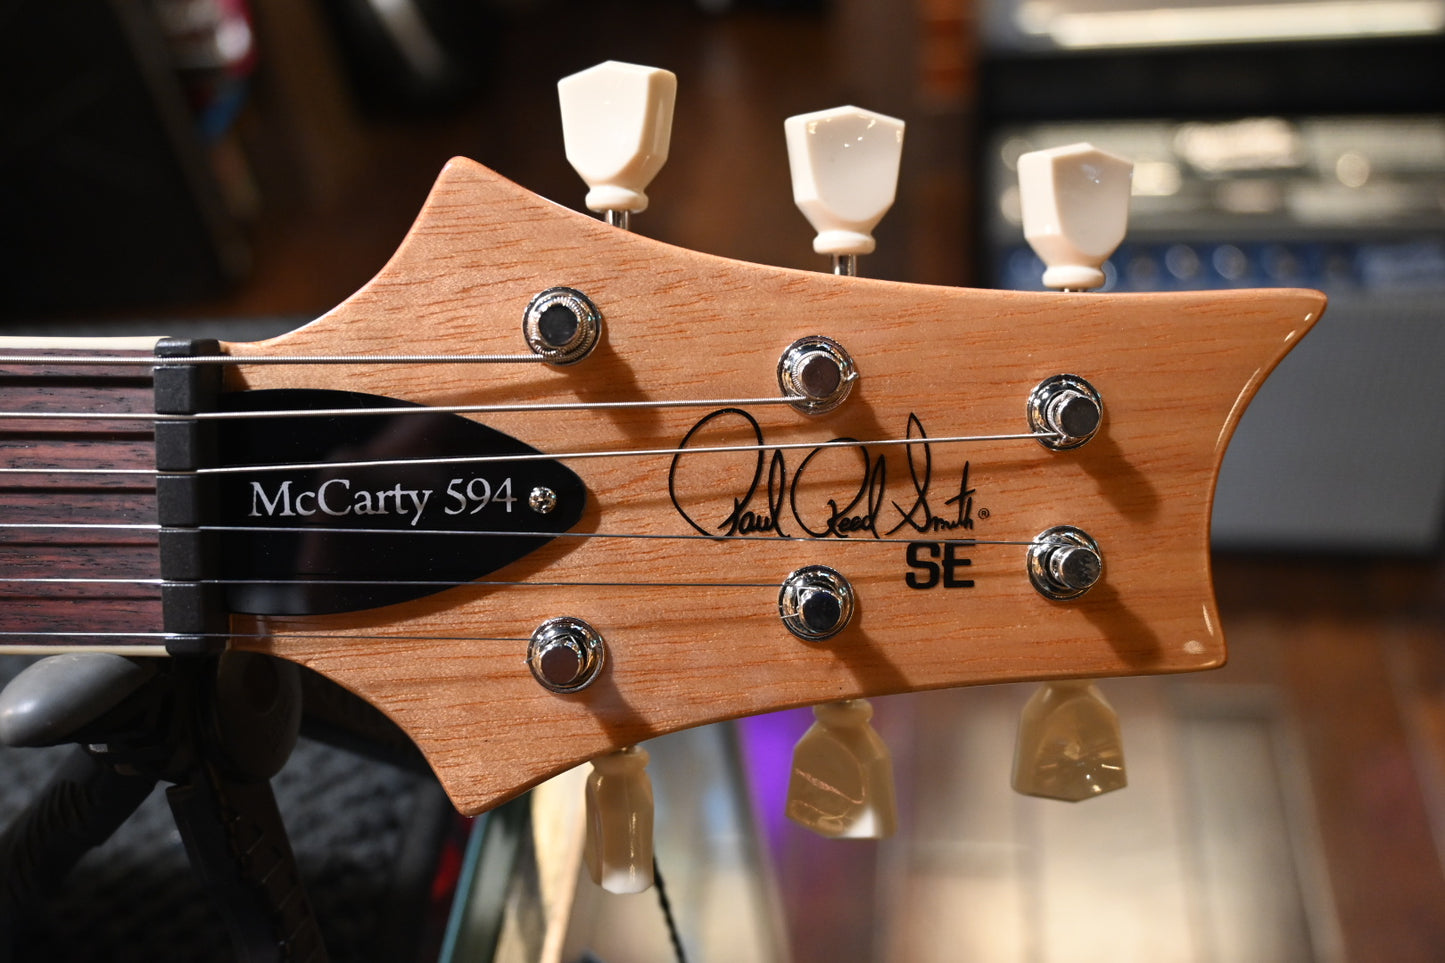 PRS SE McCarty SC 594 - Charcoal Guitar #3930 - Danville Music